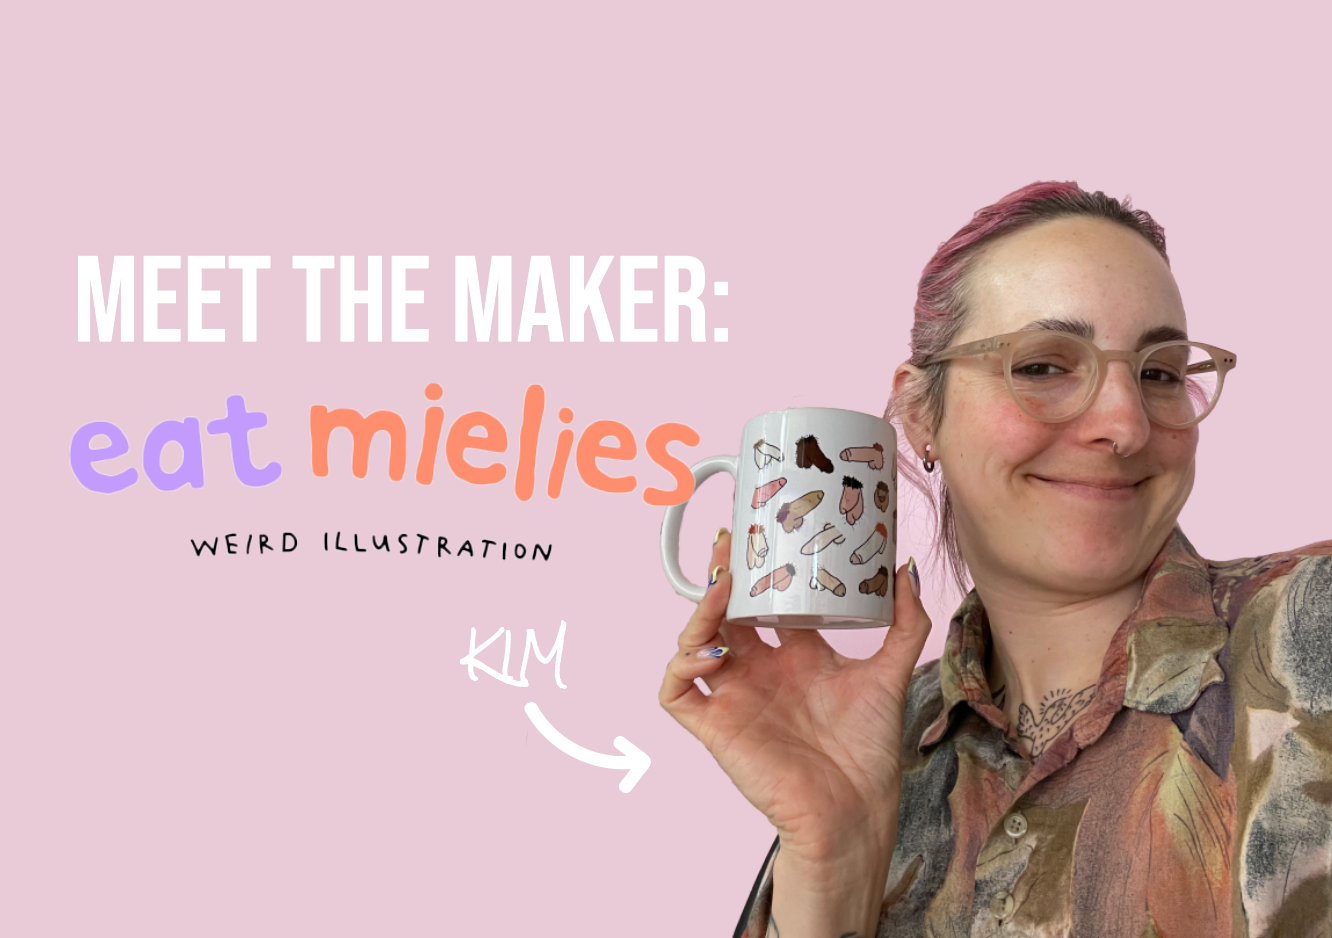 Eat Mielies Weird Illustration: Meet the Maker